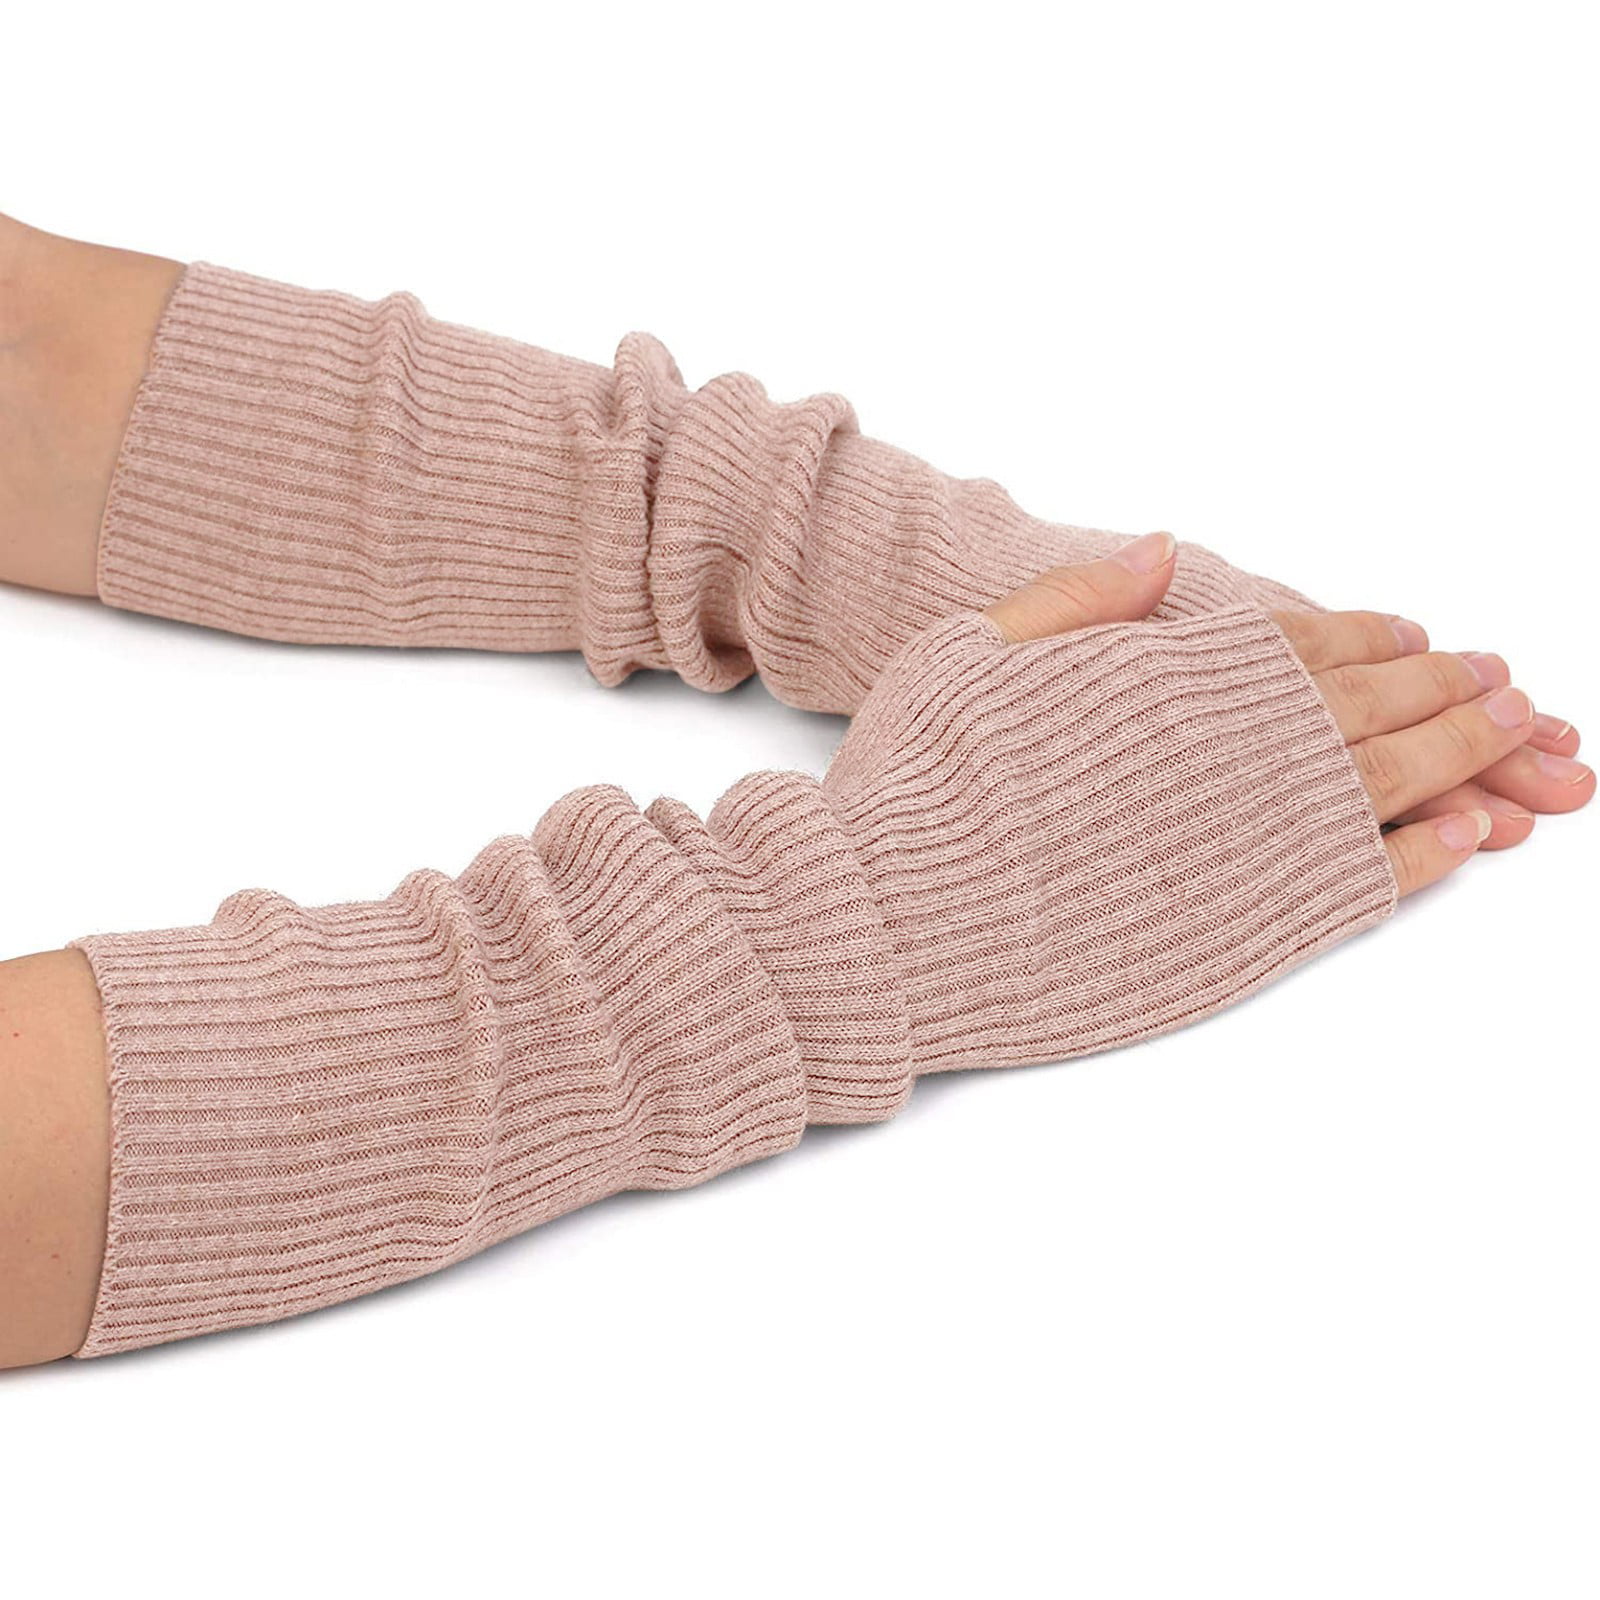 Flammi Womens Knit Arm Warmers Wool Fingerless Gloves Warm Thumb Hole Mittens